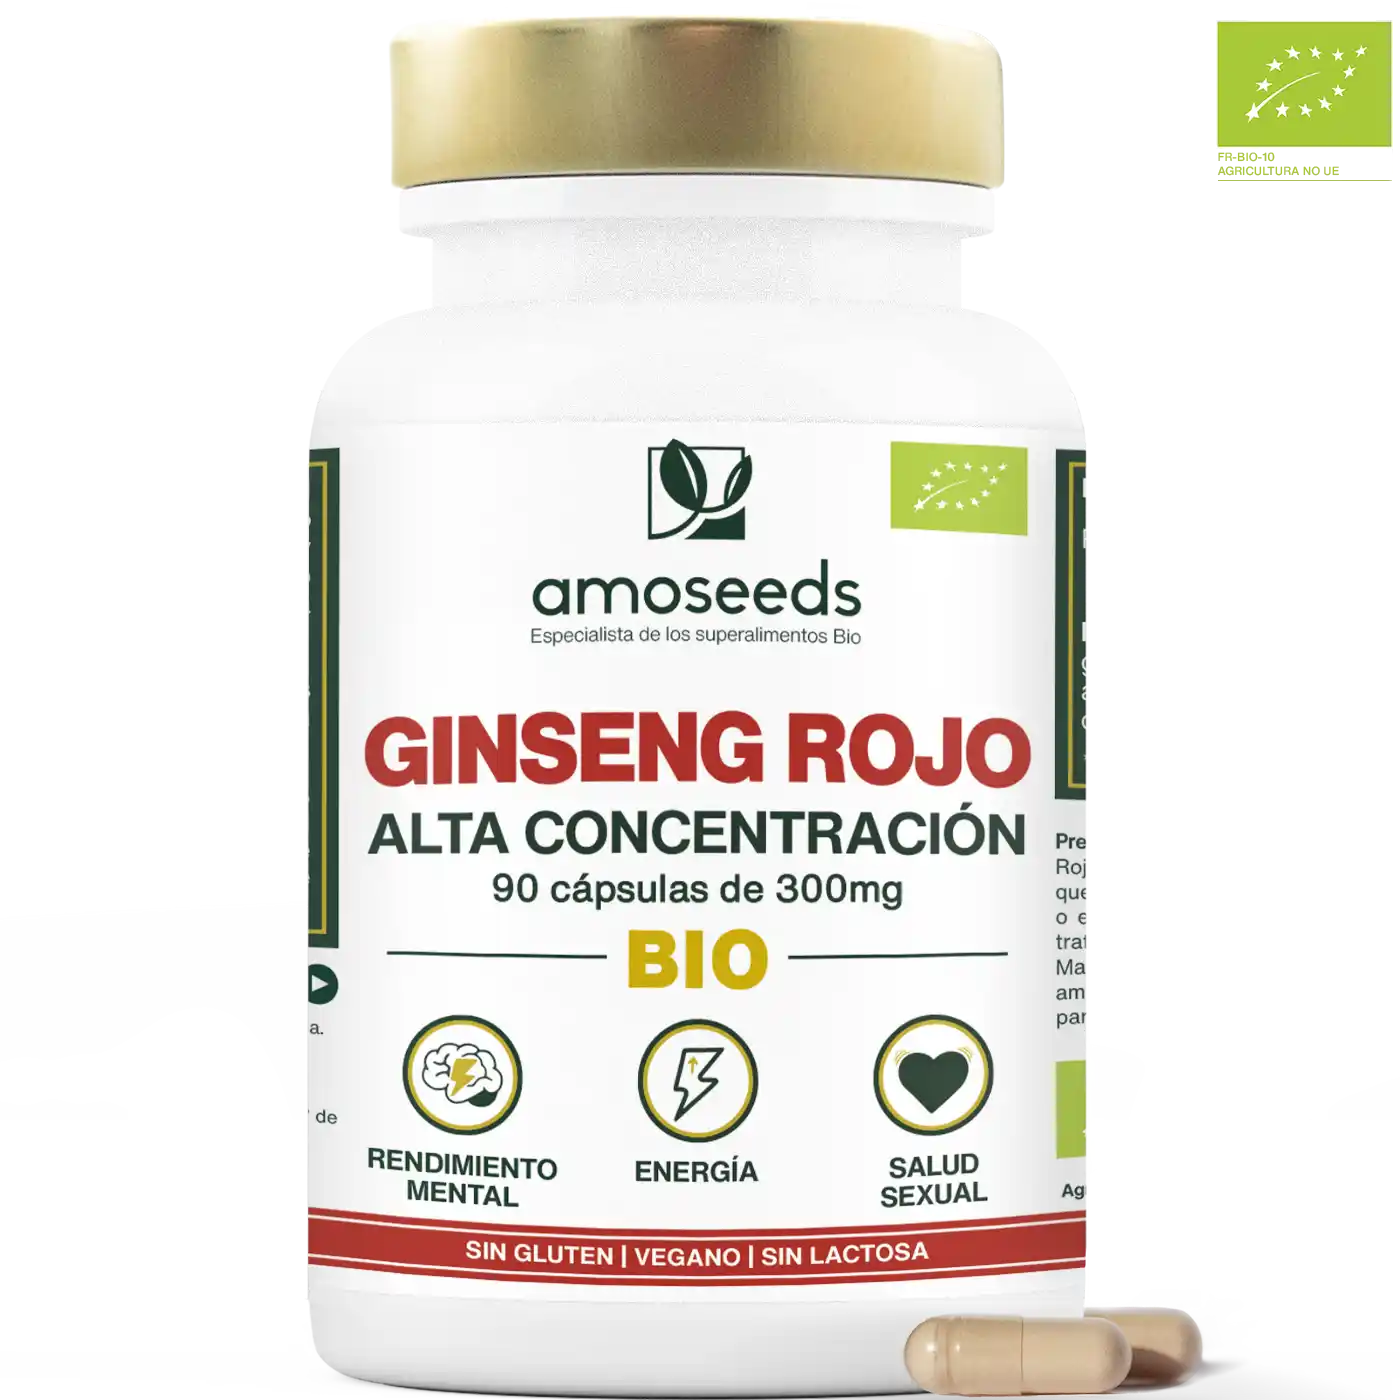 Ginseng Rojo bio capsulas amoseeds especialista de los superalimentos bio